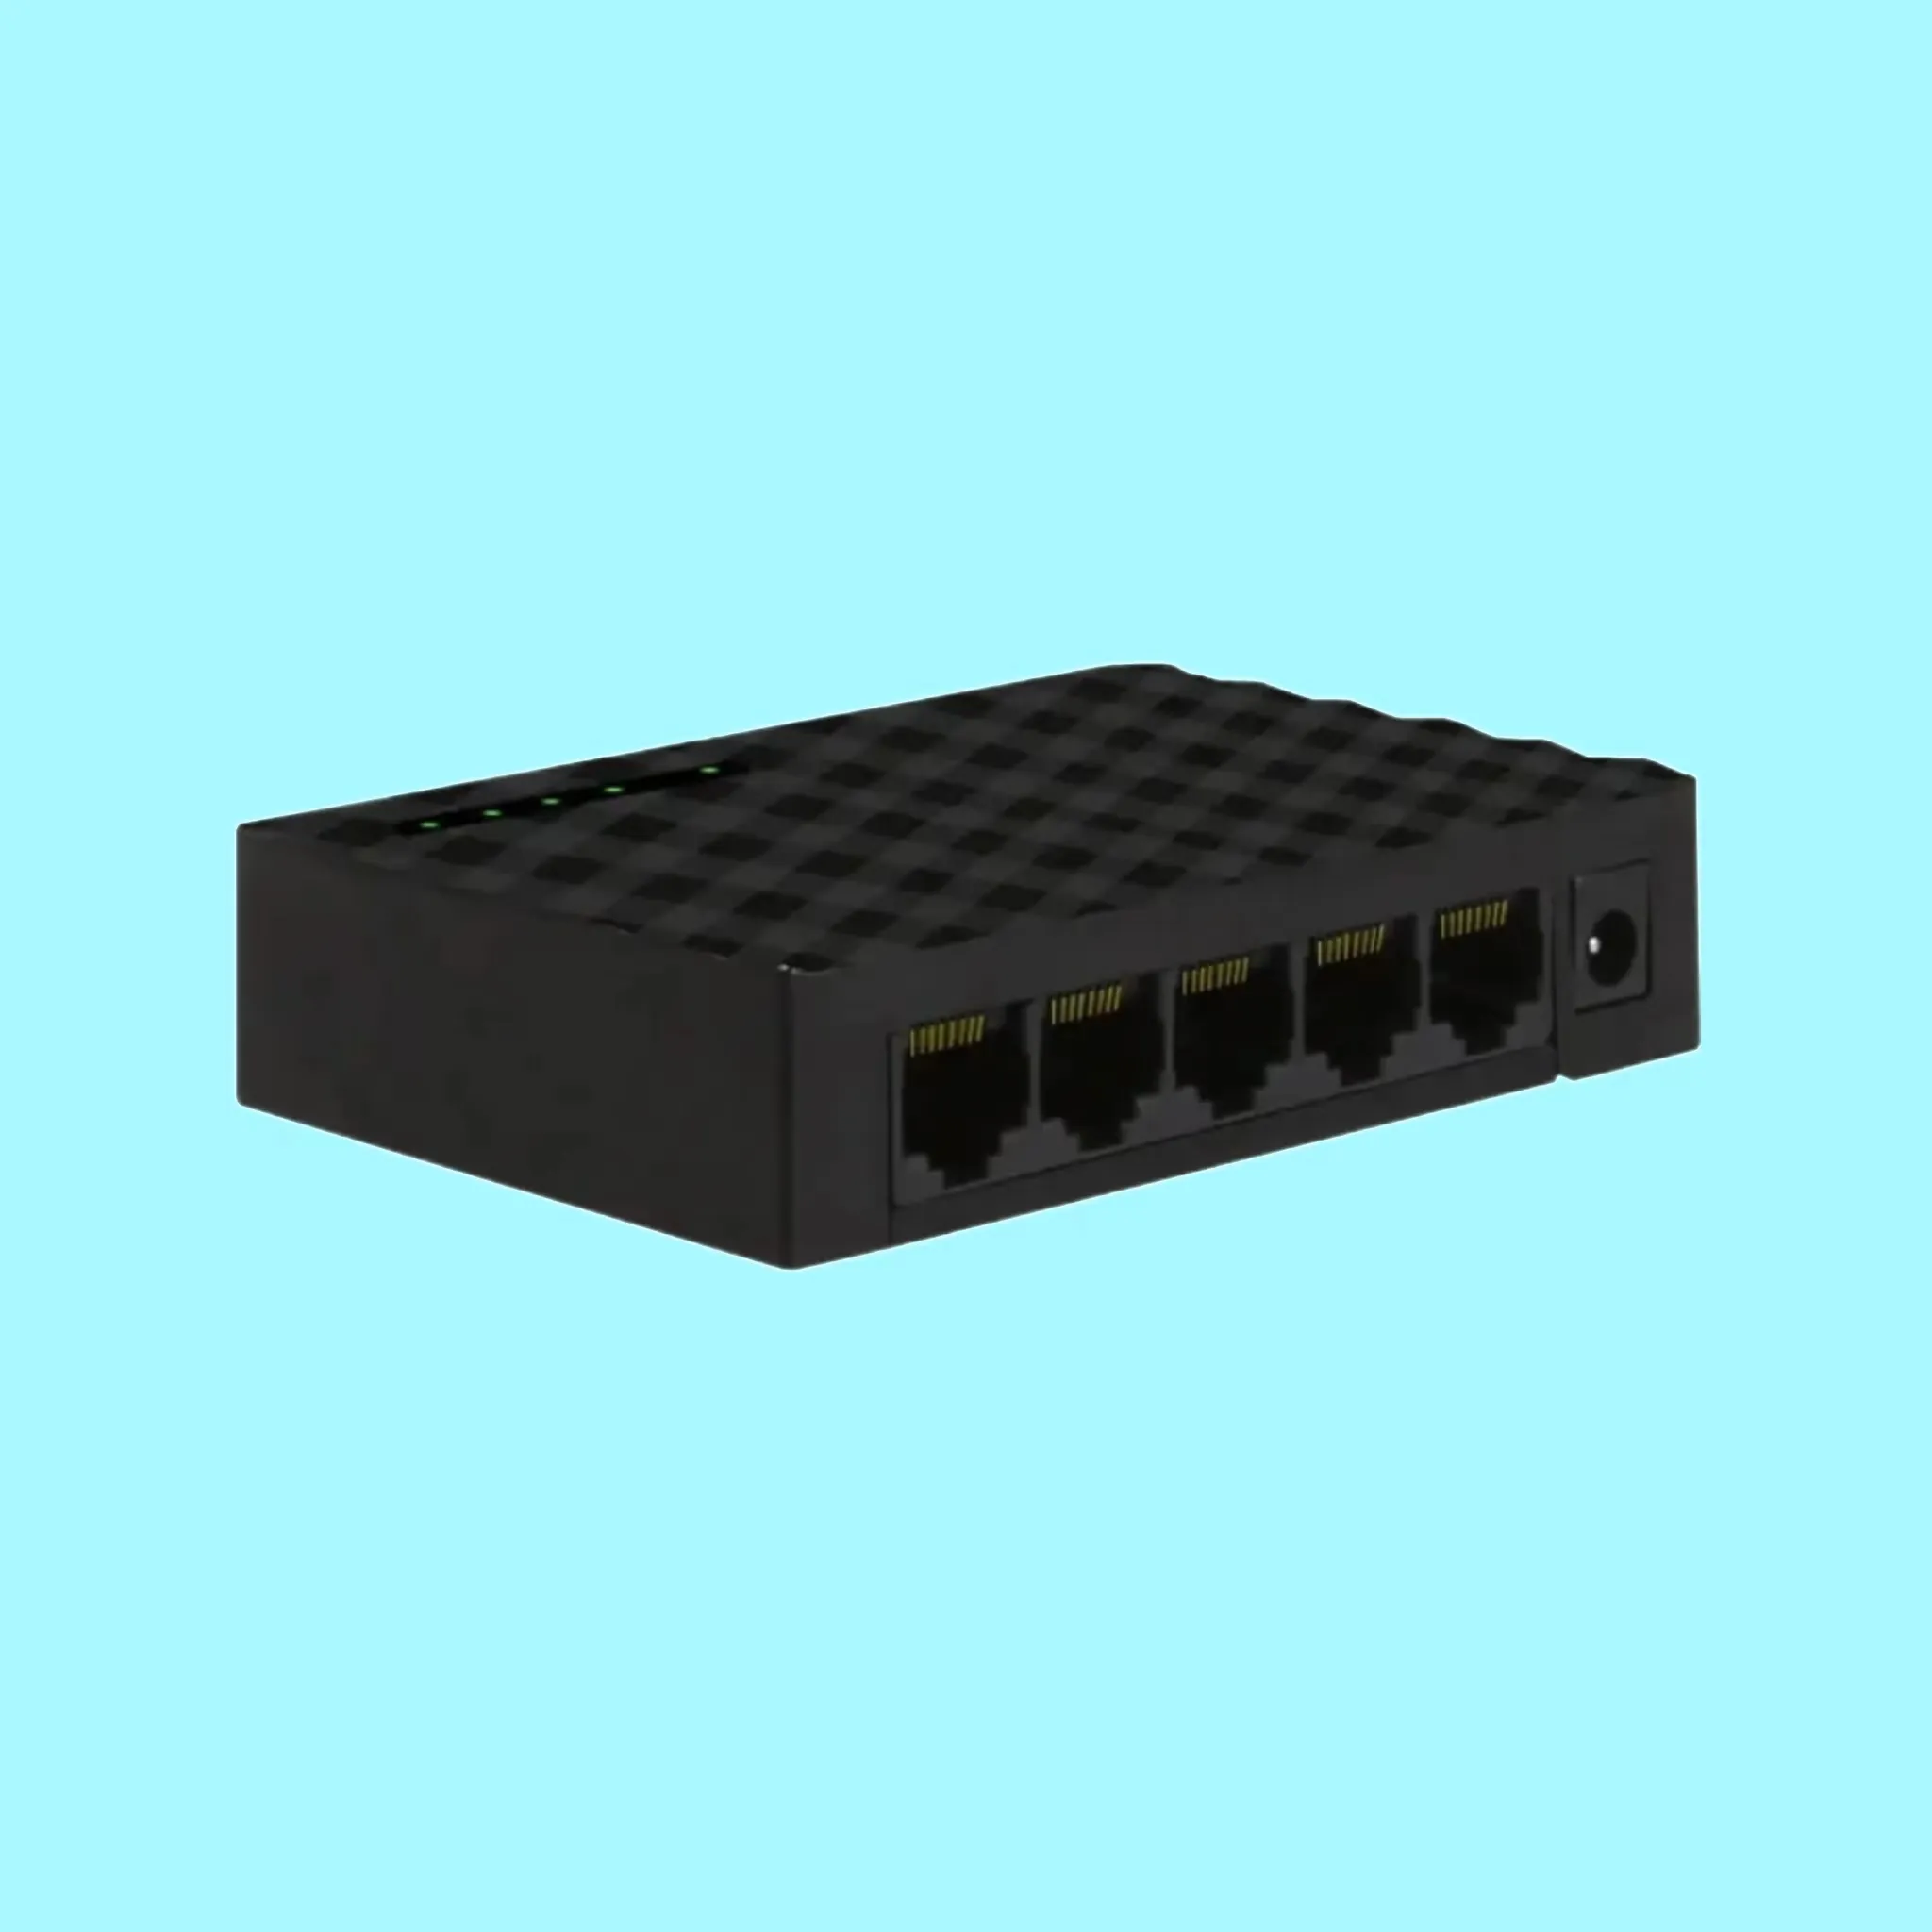 Huastlink yeni tasarım POE 5 port gigabit ethernet anahtarı ağ anahtarları 1000 adet sipariş ücretsiz örnek sağlamak